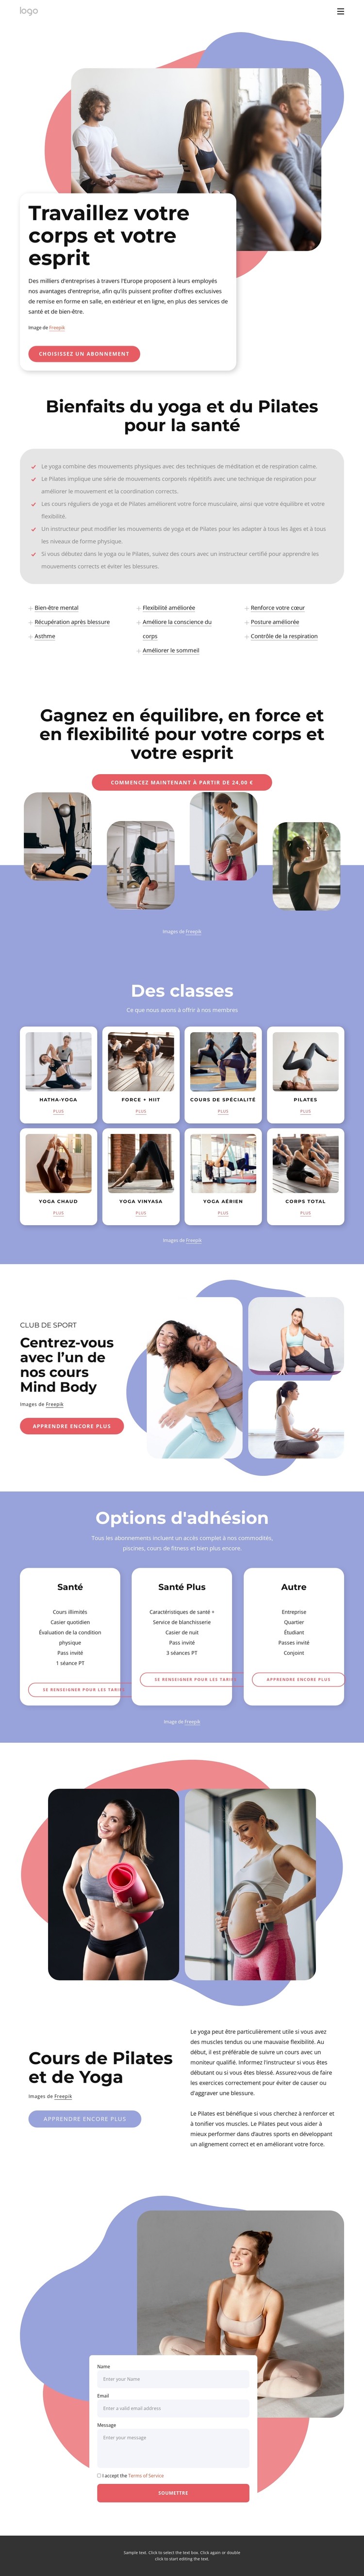 Cours de Pilates et de yoga Modèle CSS